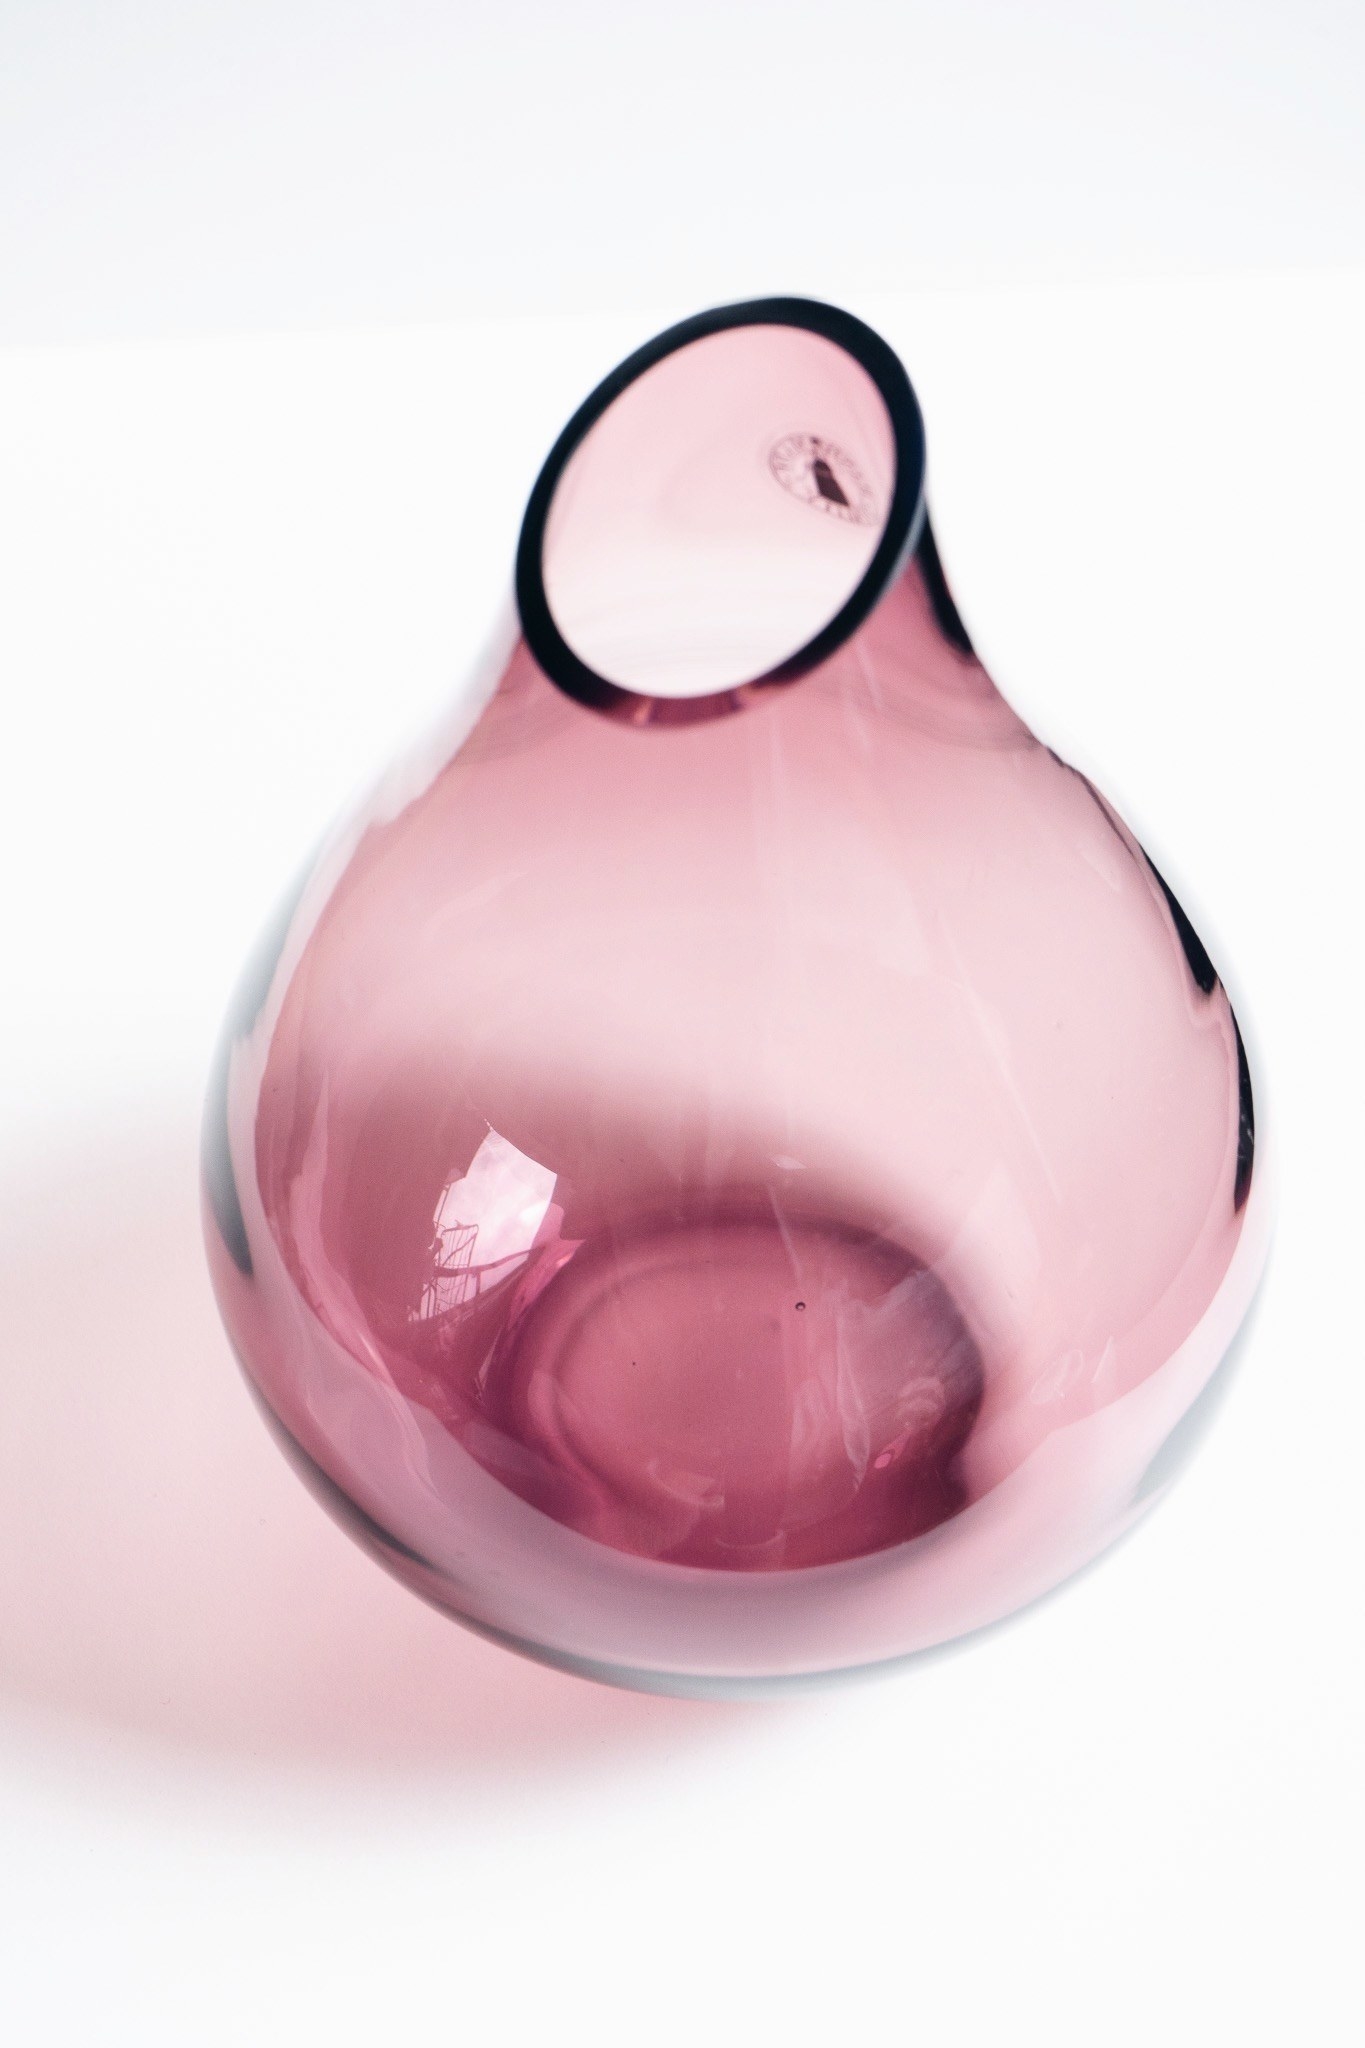 IKEA（イケア）のオススメの花瓶「SANNOLIK サンオーリク 花瓶,ピンク,17cm」